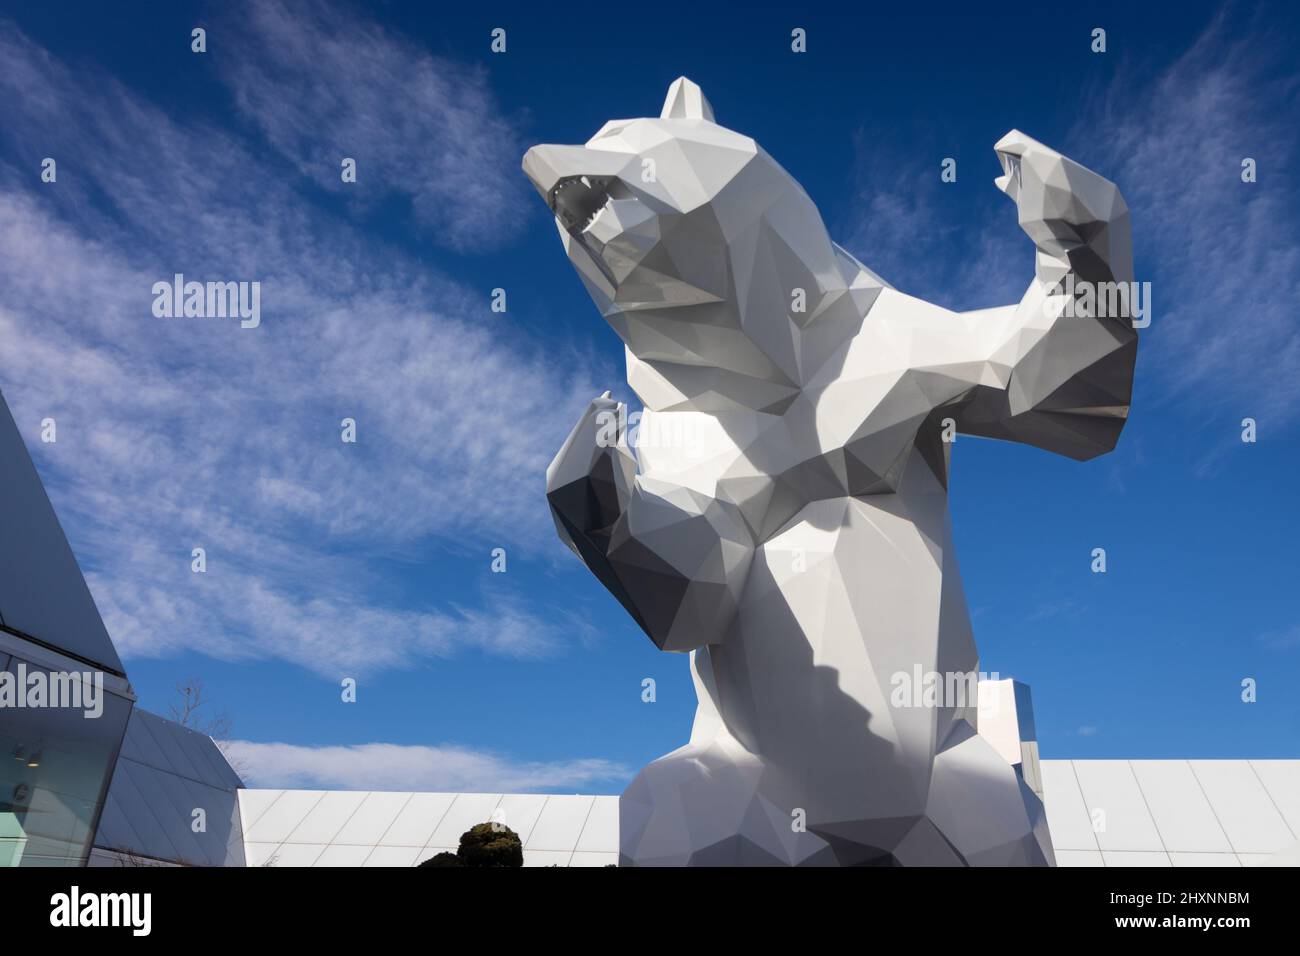 le village-france. 18-02-2022. Une statue d'un ours blanc dans le centre commercial des magasins d'usine avec un ciel bleu. Appelé le village. Banque D'Images